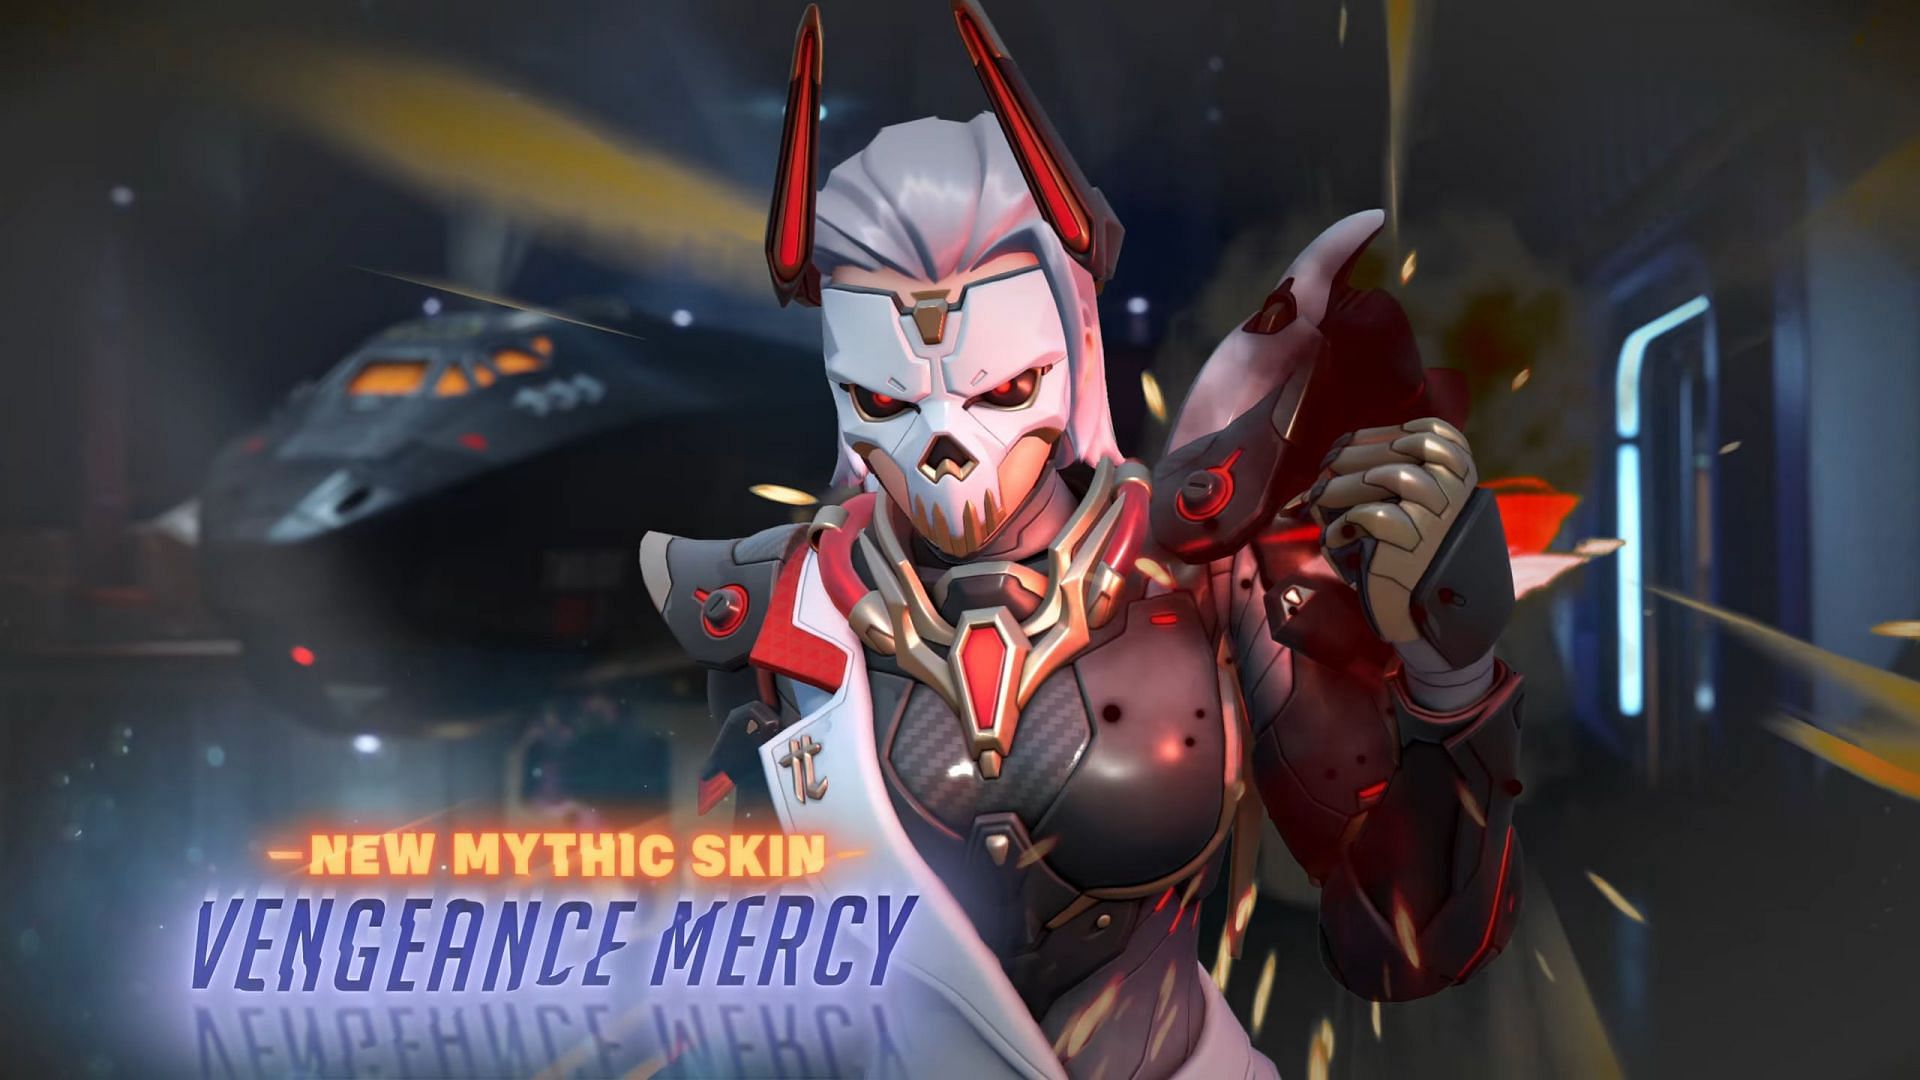 Vengeance Mercy Mythic skin in Overwatch 2,  Mercy Mythic skin